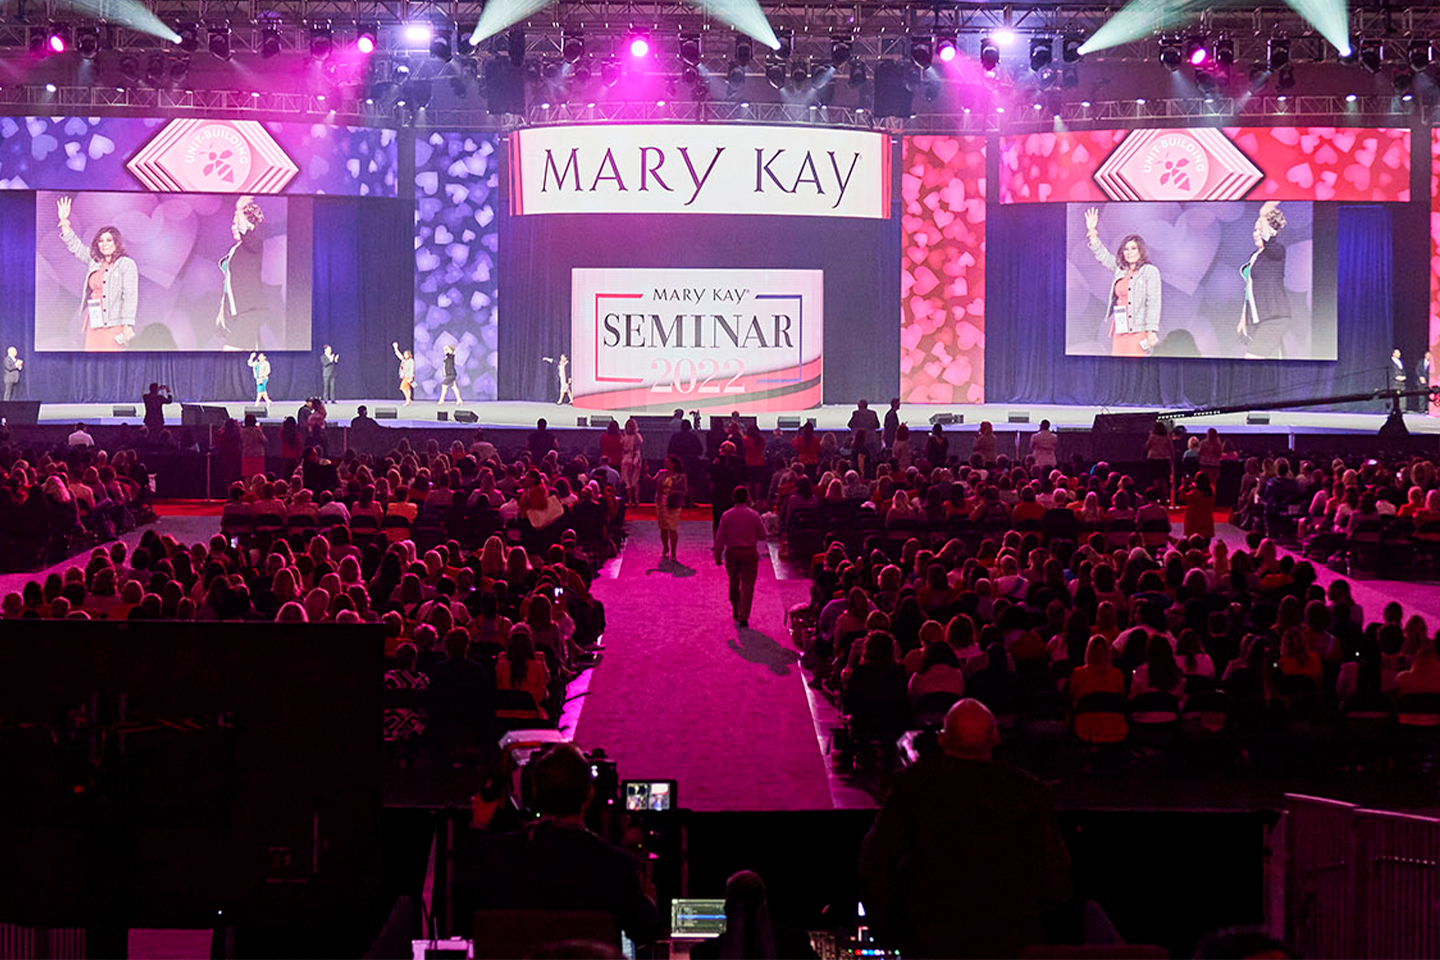 Persidangan Mary Kay dengan orang ramai berjalan melintasi pentas